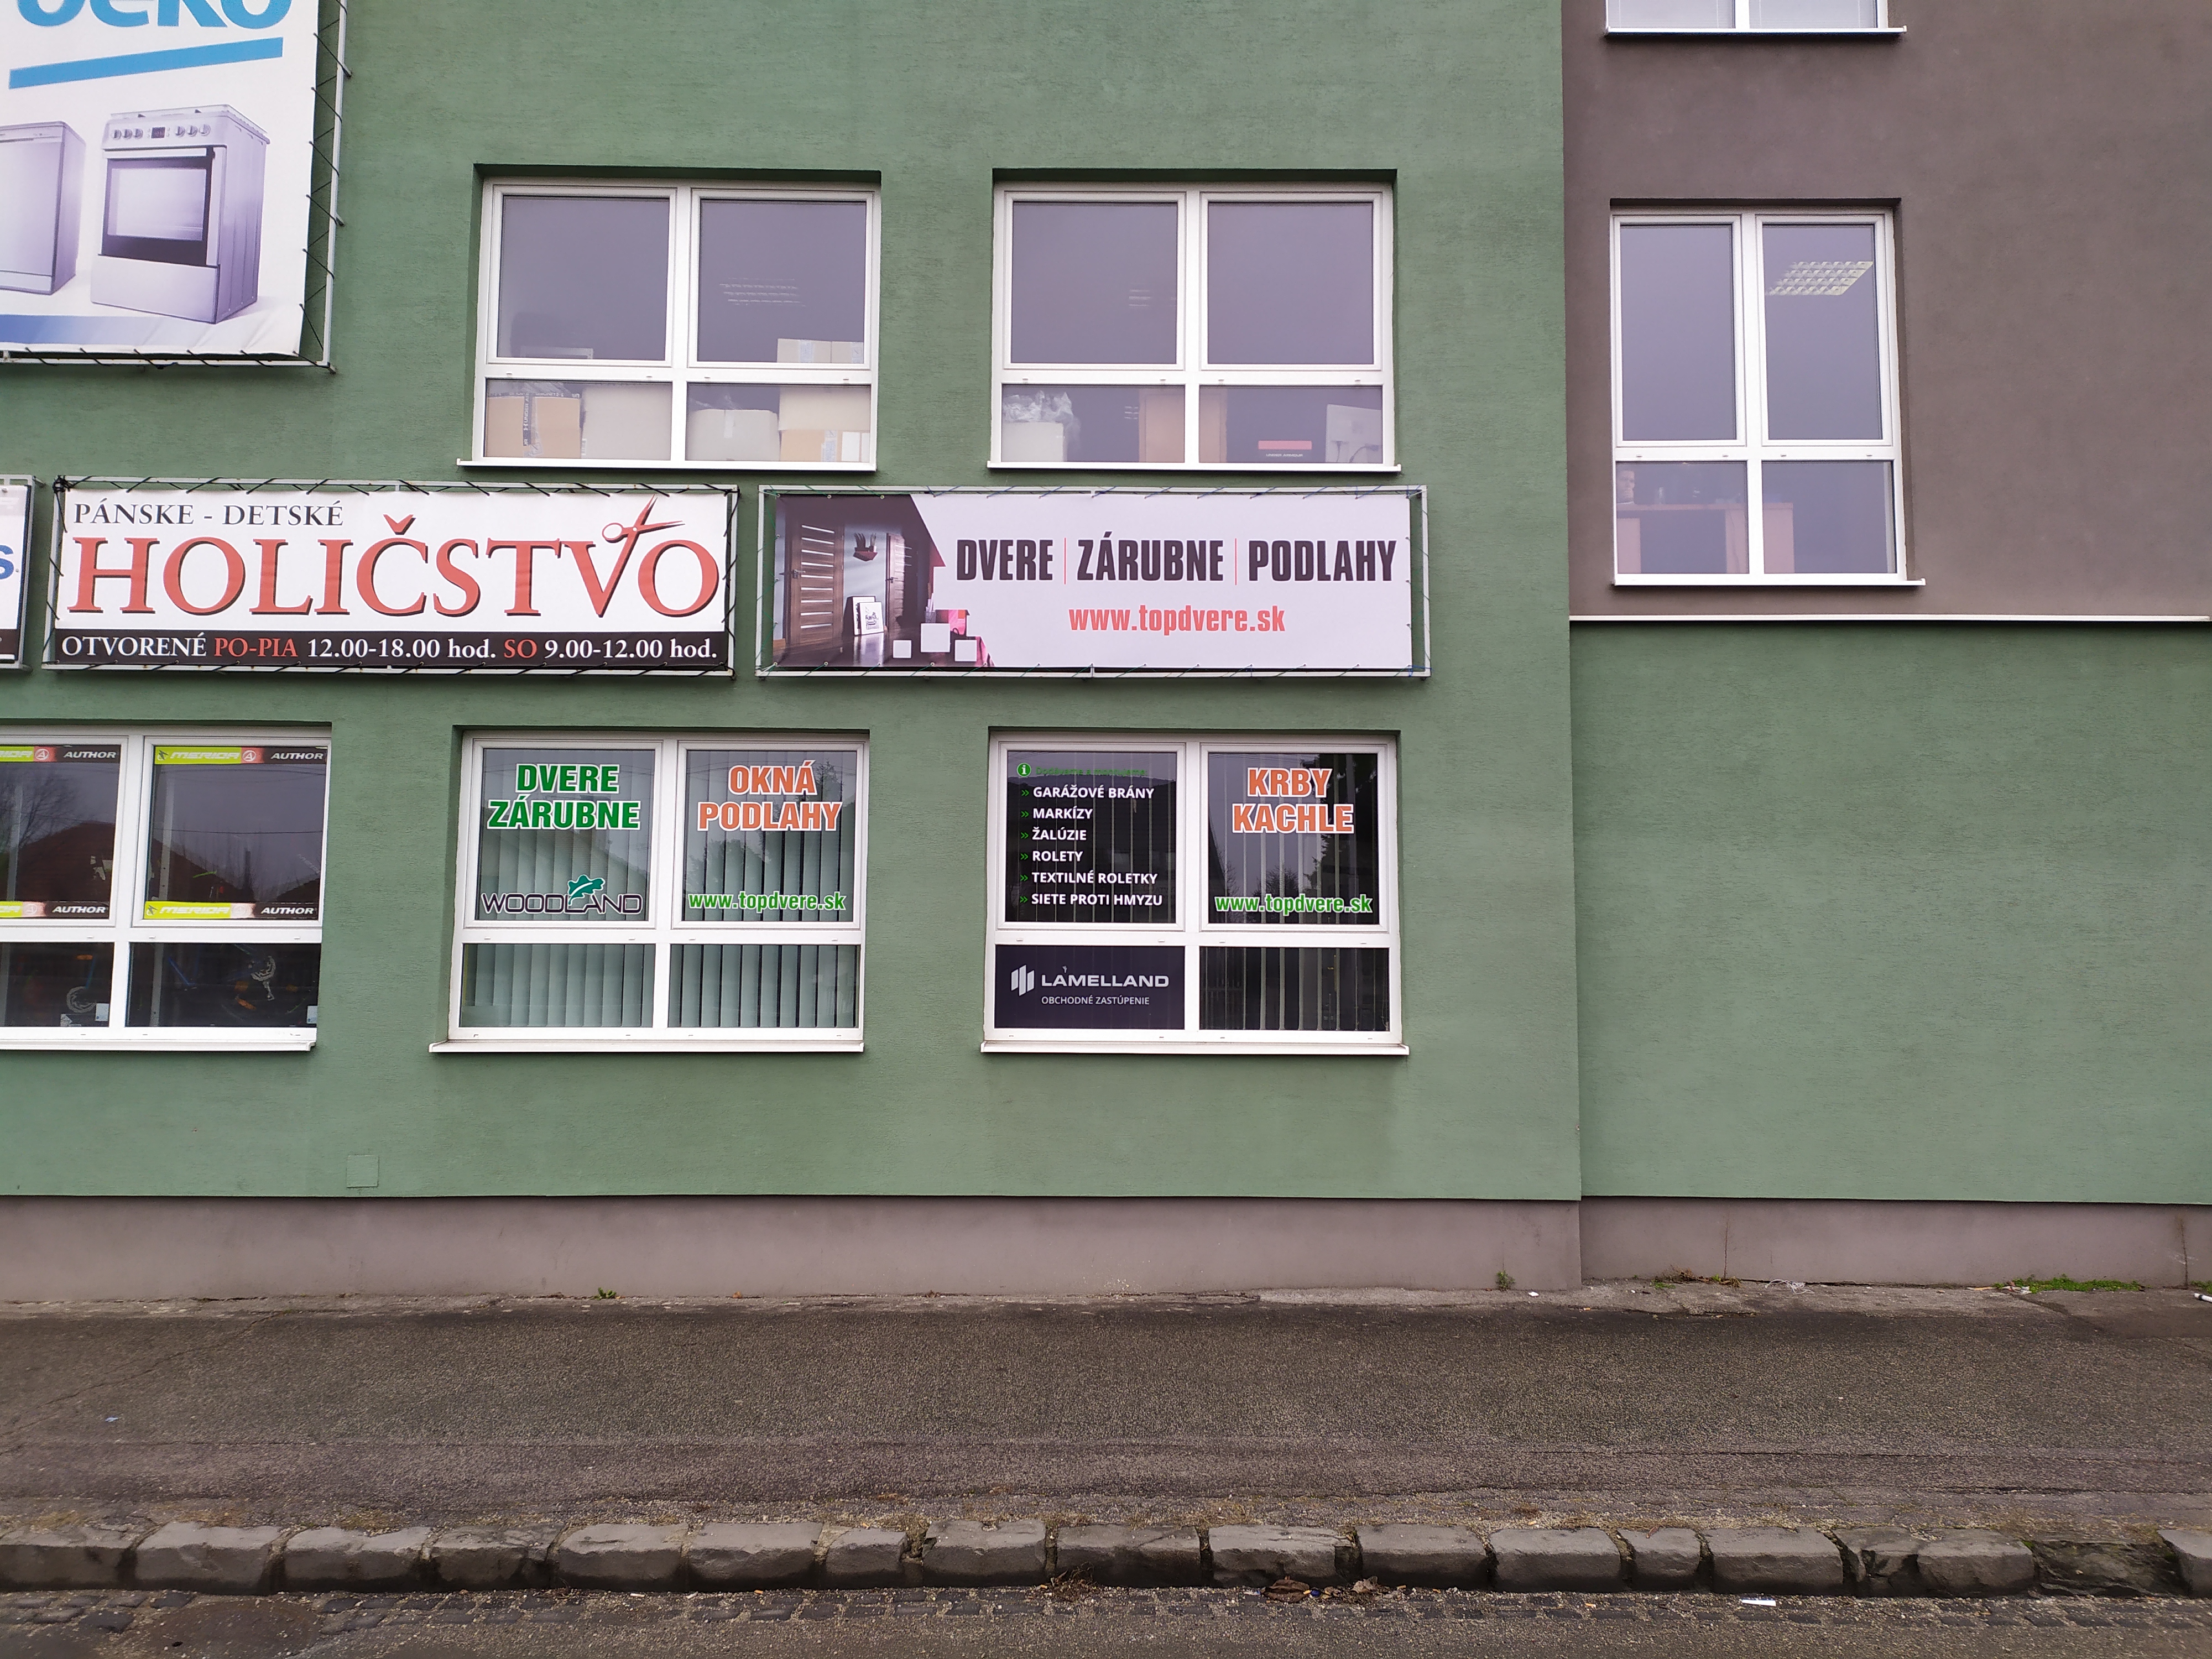 Predajňa dverí, laminátových, vinylových, kompozitných, korkových podláh a tieniacej techniky v Topoľčanoch.